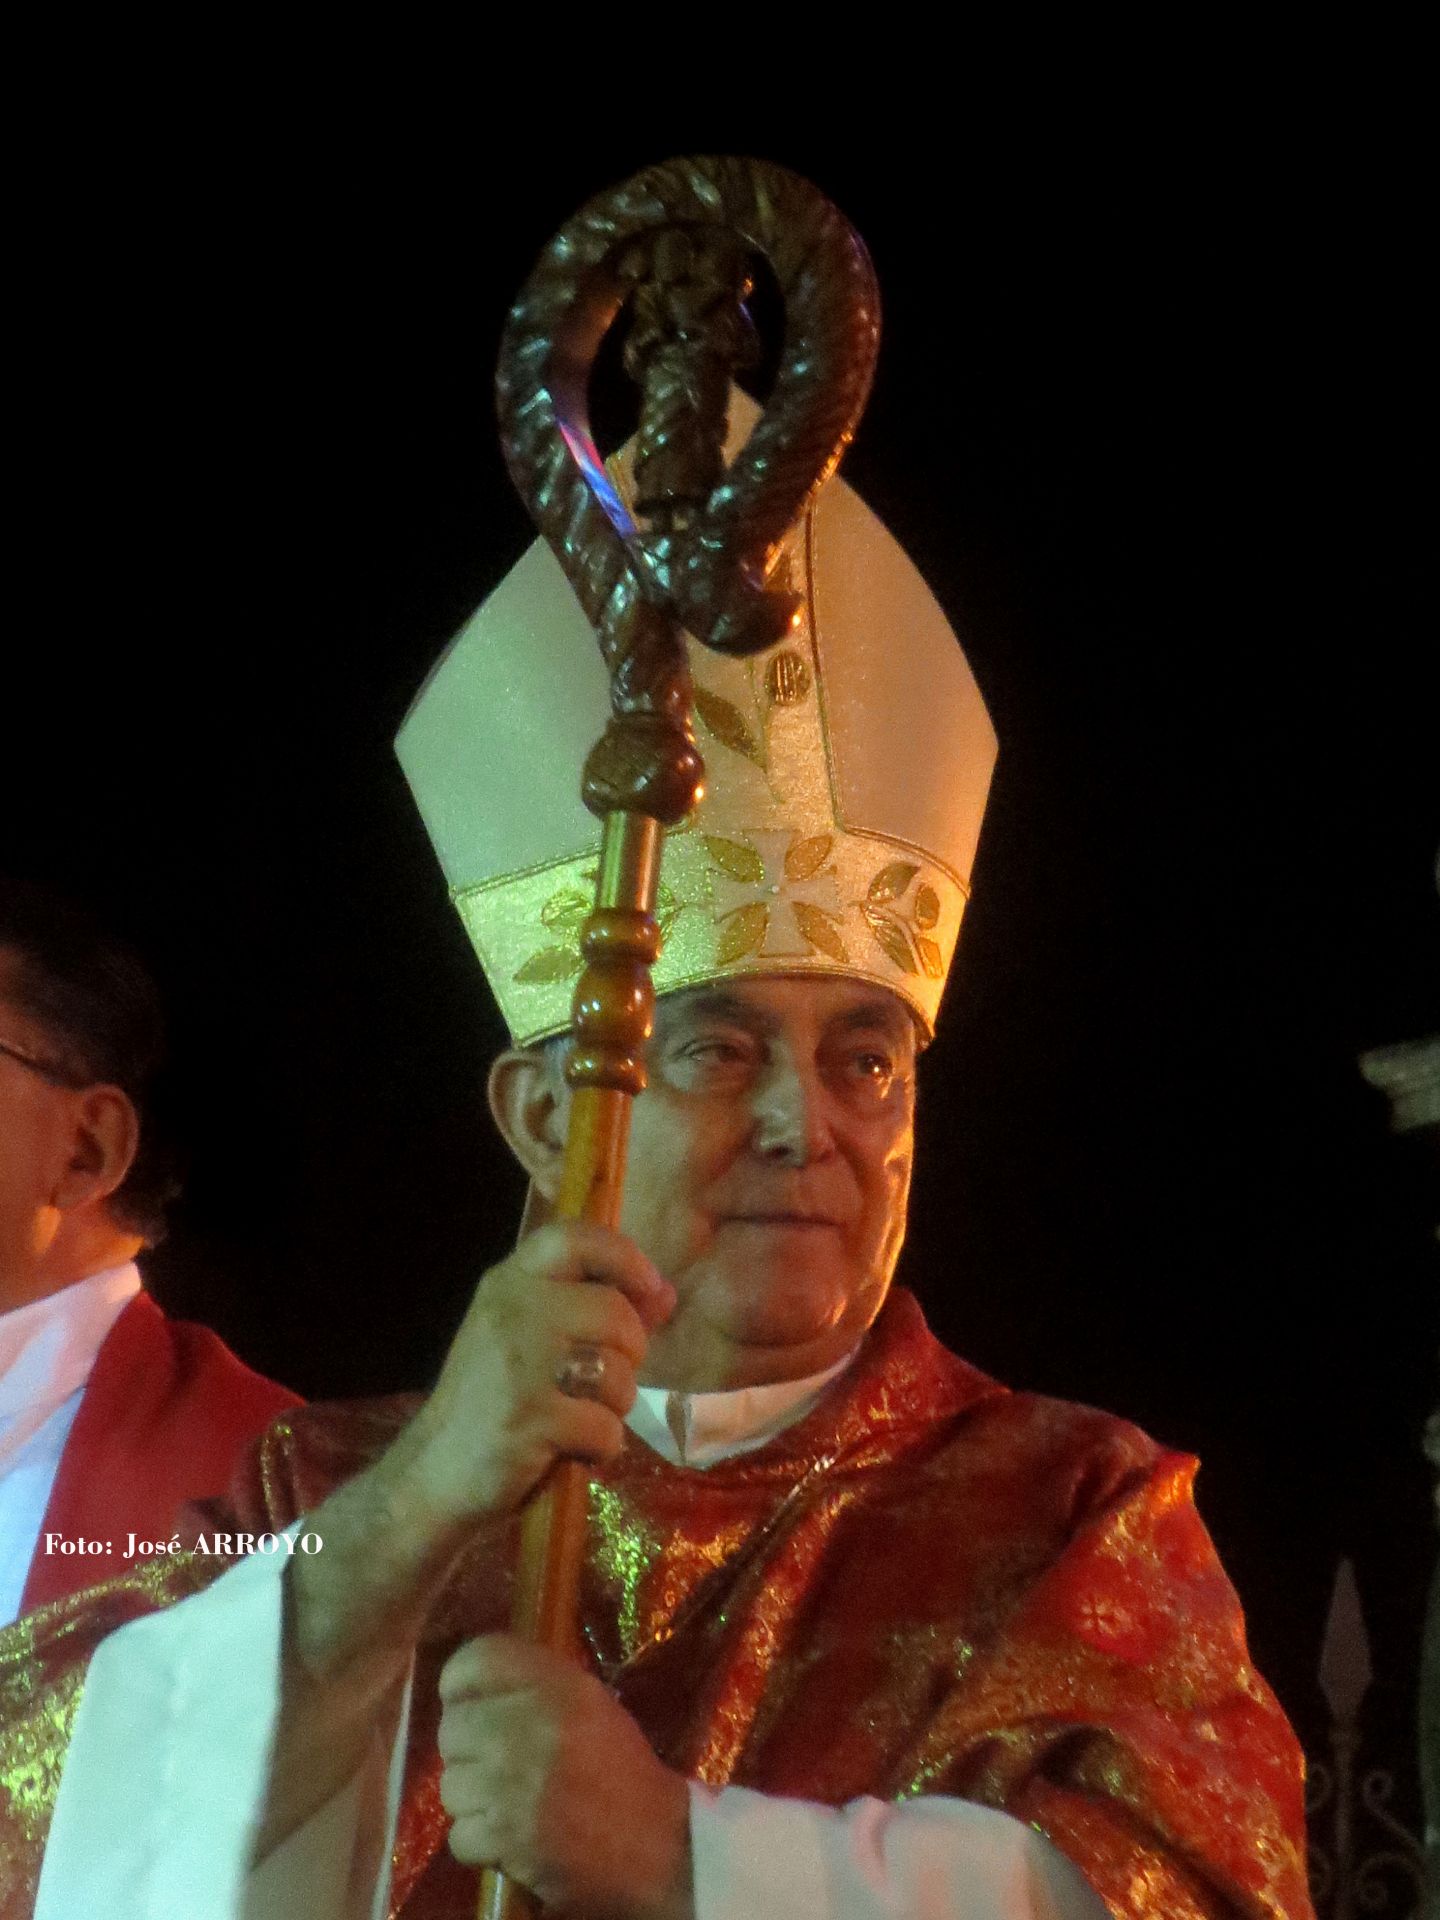 
Orar por la paz de Guerrero. Aseguró el obispo Salvador Rangel que el panorama no es nada halagador.
